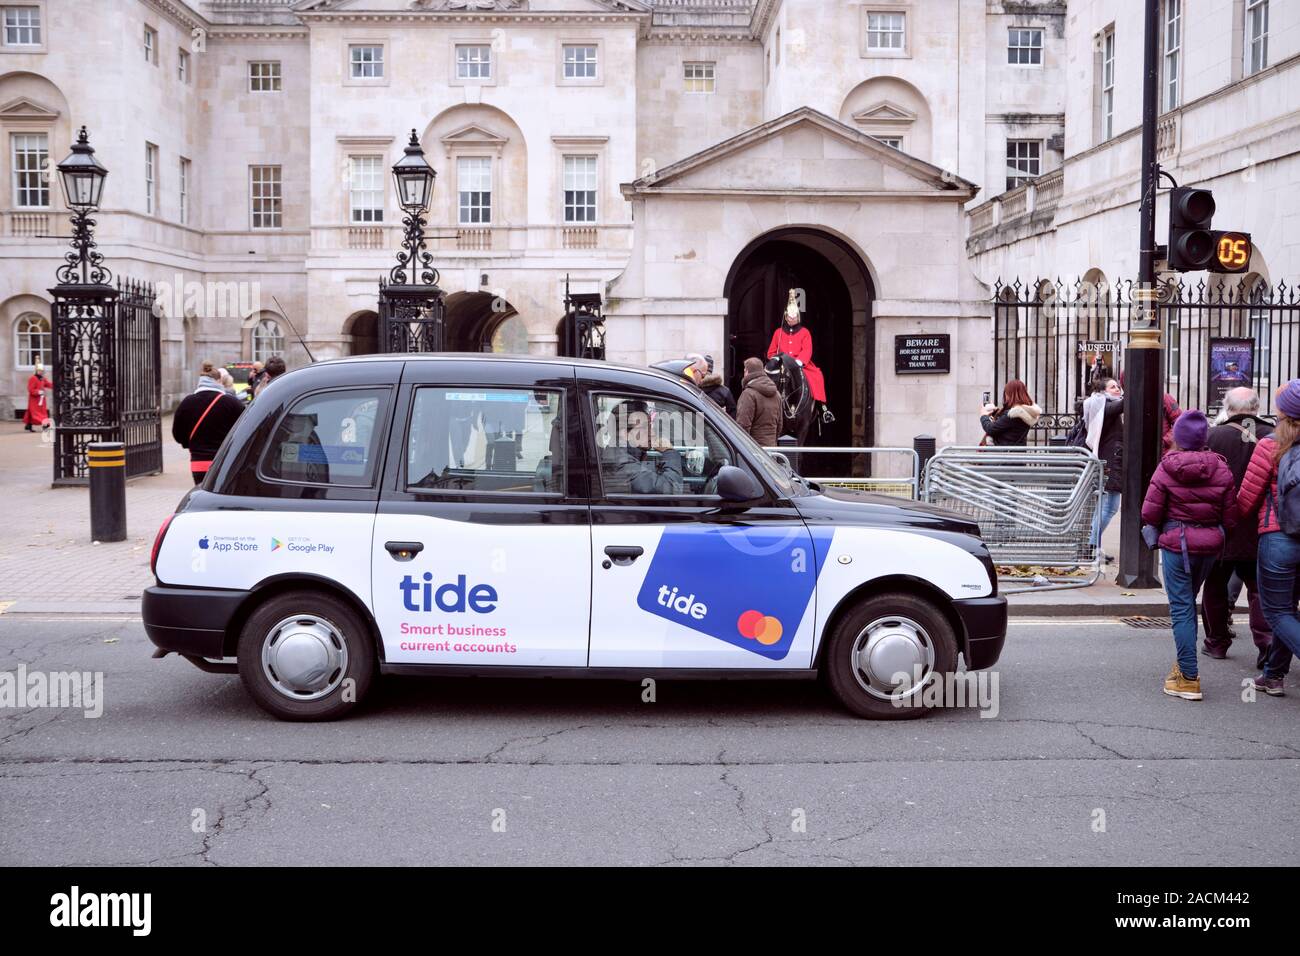 London taxi noir, avec la publicité du compte courant de marée, s'est arrêté à passage pour piétons en face du poste de garde royale. Londres, Royaume-Uni, le 21 novembre 2019 Banque D'Images